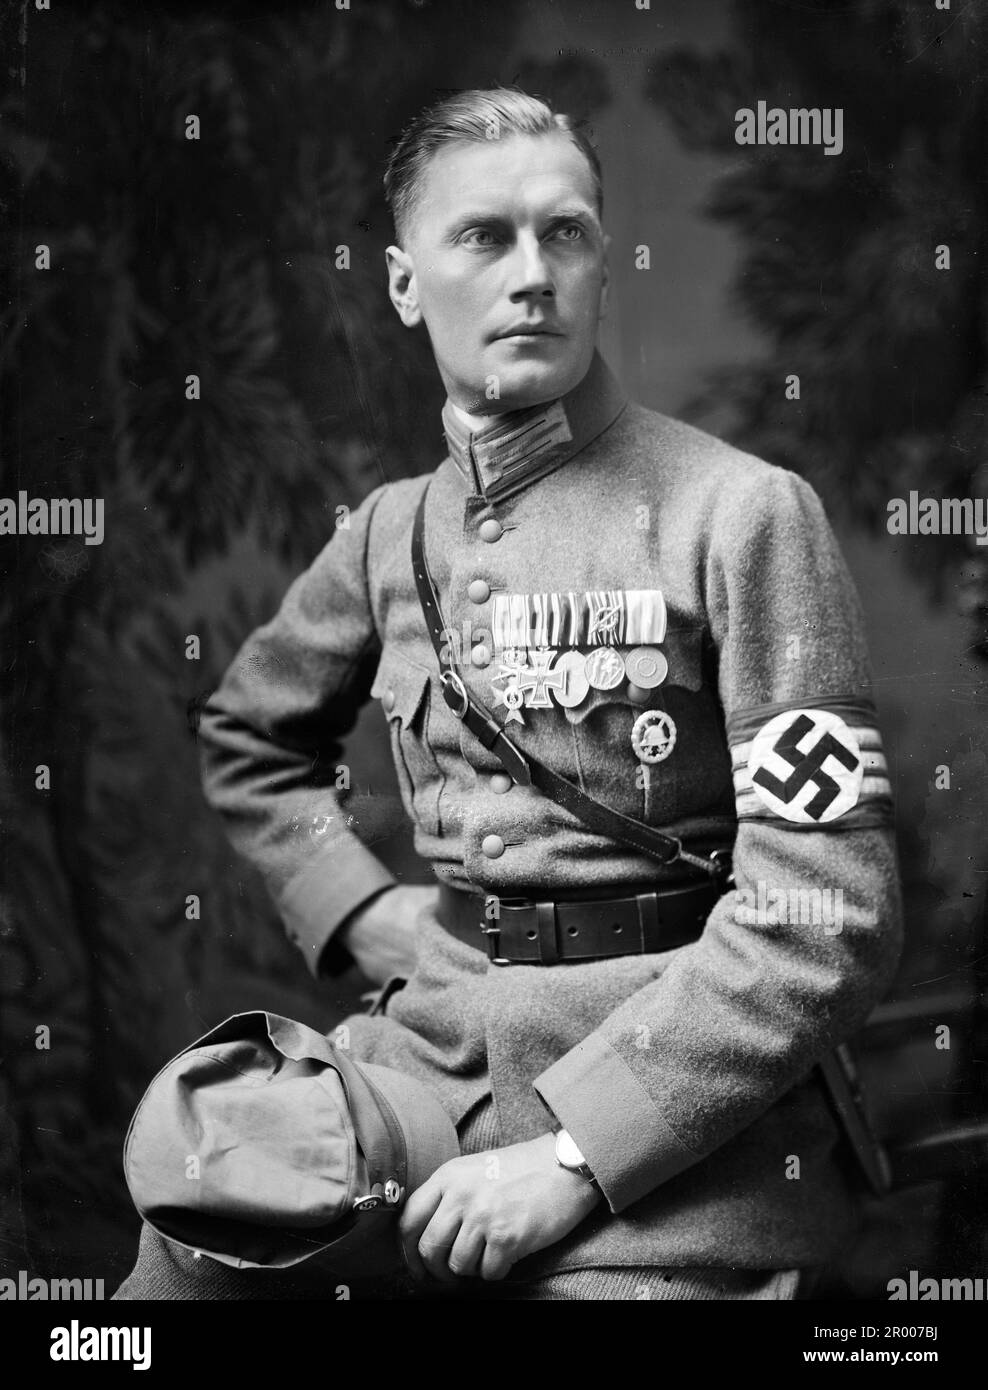 Wilhelm Brückner (Adolf Hitler, 11 dicembre 1884 1940 – 18 agosto 1954) è stato un . In seguito, Brückner si unì all'esercito, diventando un Oberst (colonnello) alla fine della seconda guerra mondiale Alla fine del 1922 entrò a far parte del Partito nazista . Il 9 novembre 1923 Brückner ha partecipato alla birreria Putsch di Monaco e si è reso colpevole di aver dato un contributo e di aver reso possibile l'alto tradimento. Il 20 febbraio 1934, Brückner fu nominato Capo Adjutante di Hitler e mantenne tale ruolo fino al licenziamento il 18 ottobre 1940. Qui indossa la sua uniforme nazista con fascia da braccio nazista, decorazioni militari, shoulde Foto Stock